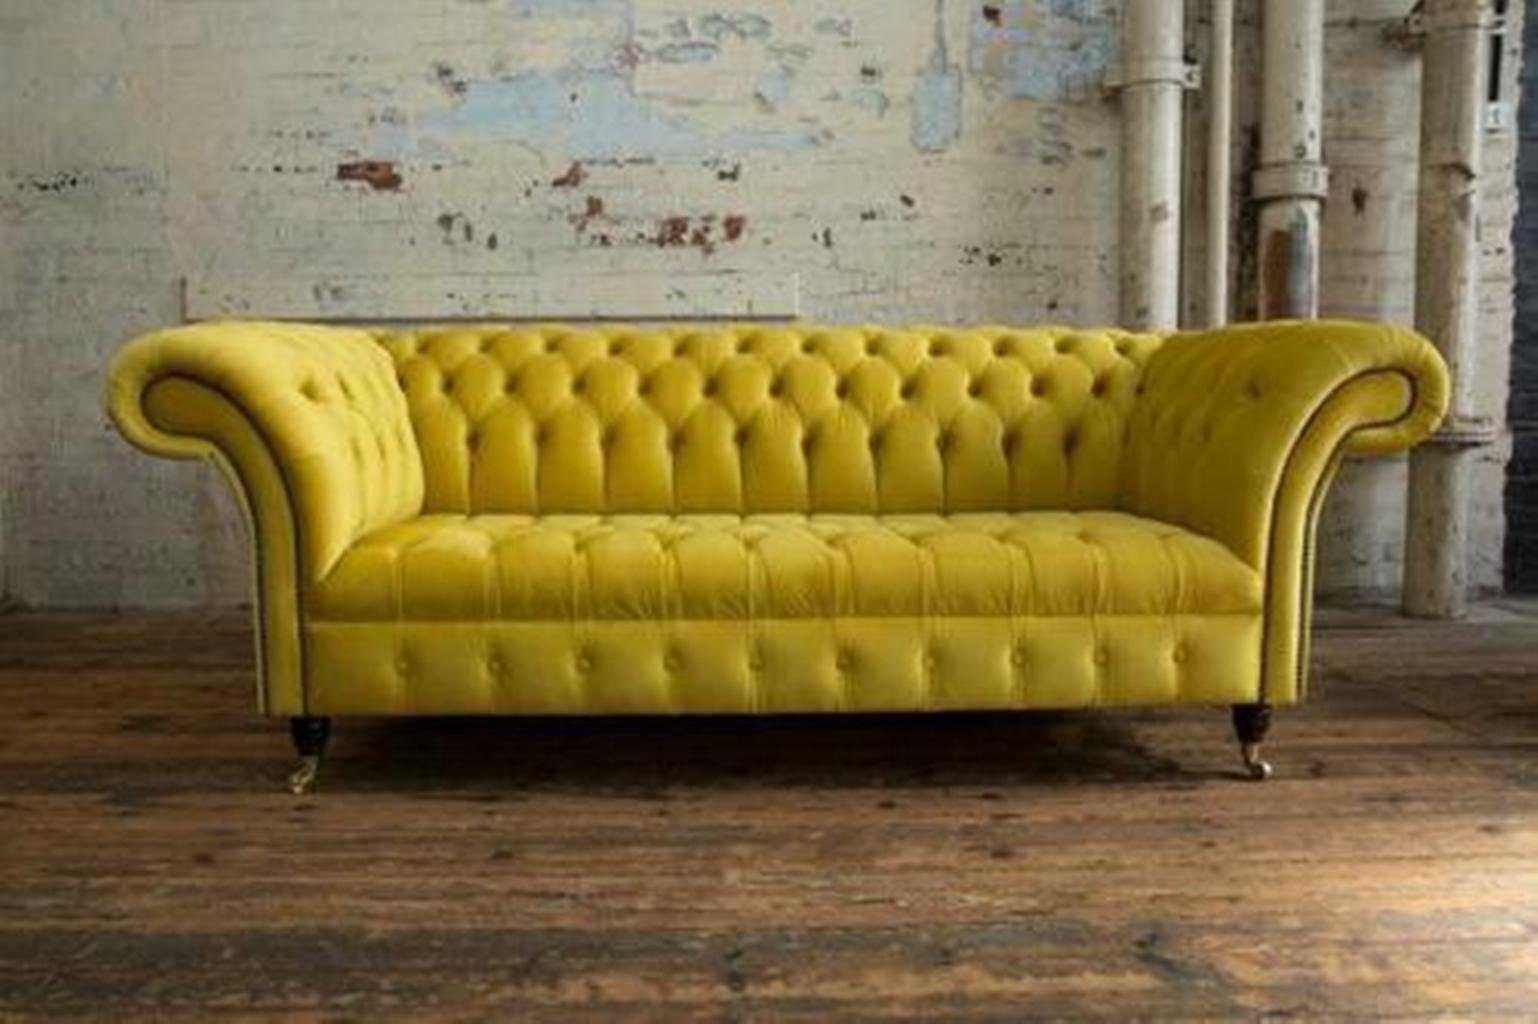 JVmoebel Chesterfield-Sofa Gelbe Chesterfield Couch luxus Dreisitzer Polstermöbel Neu, Made in Europe